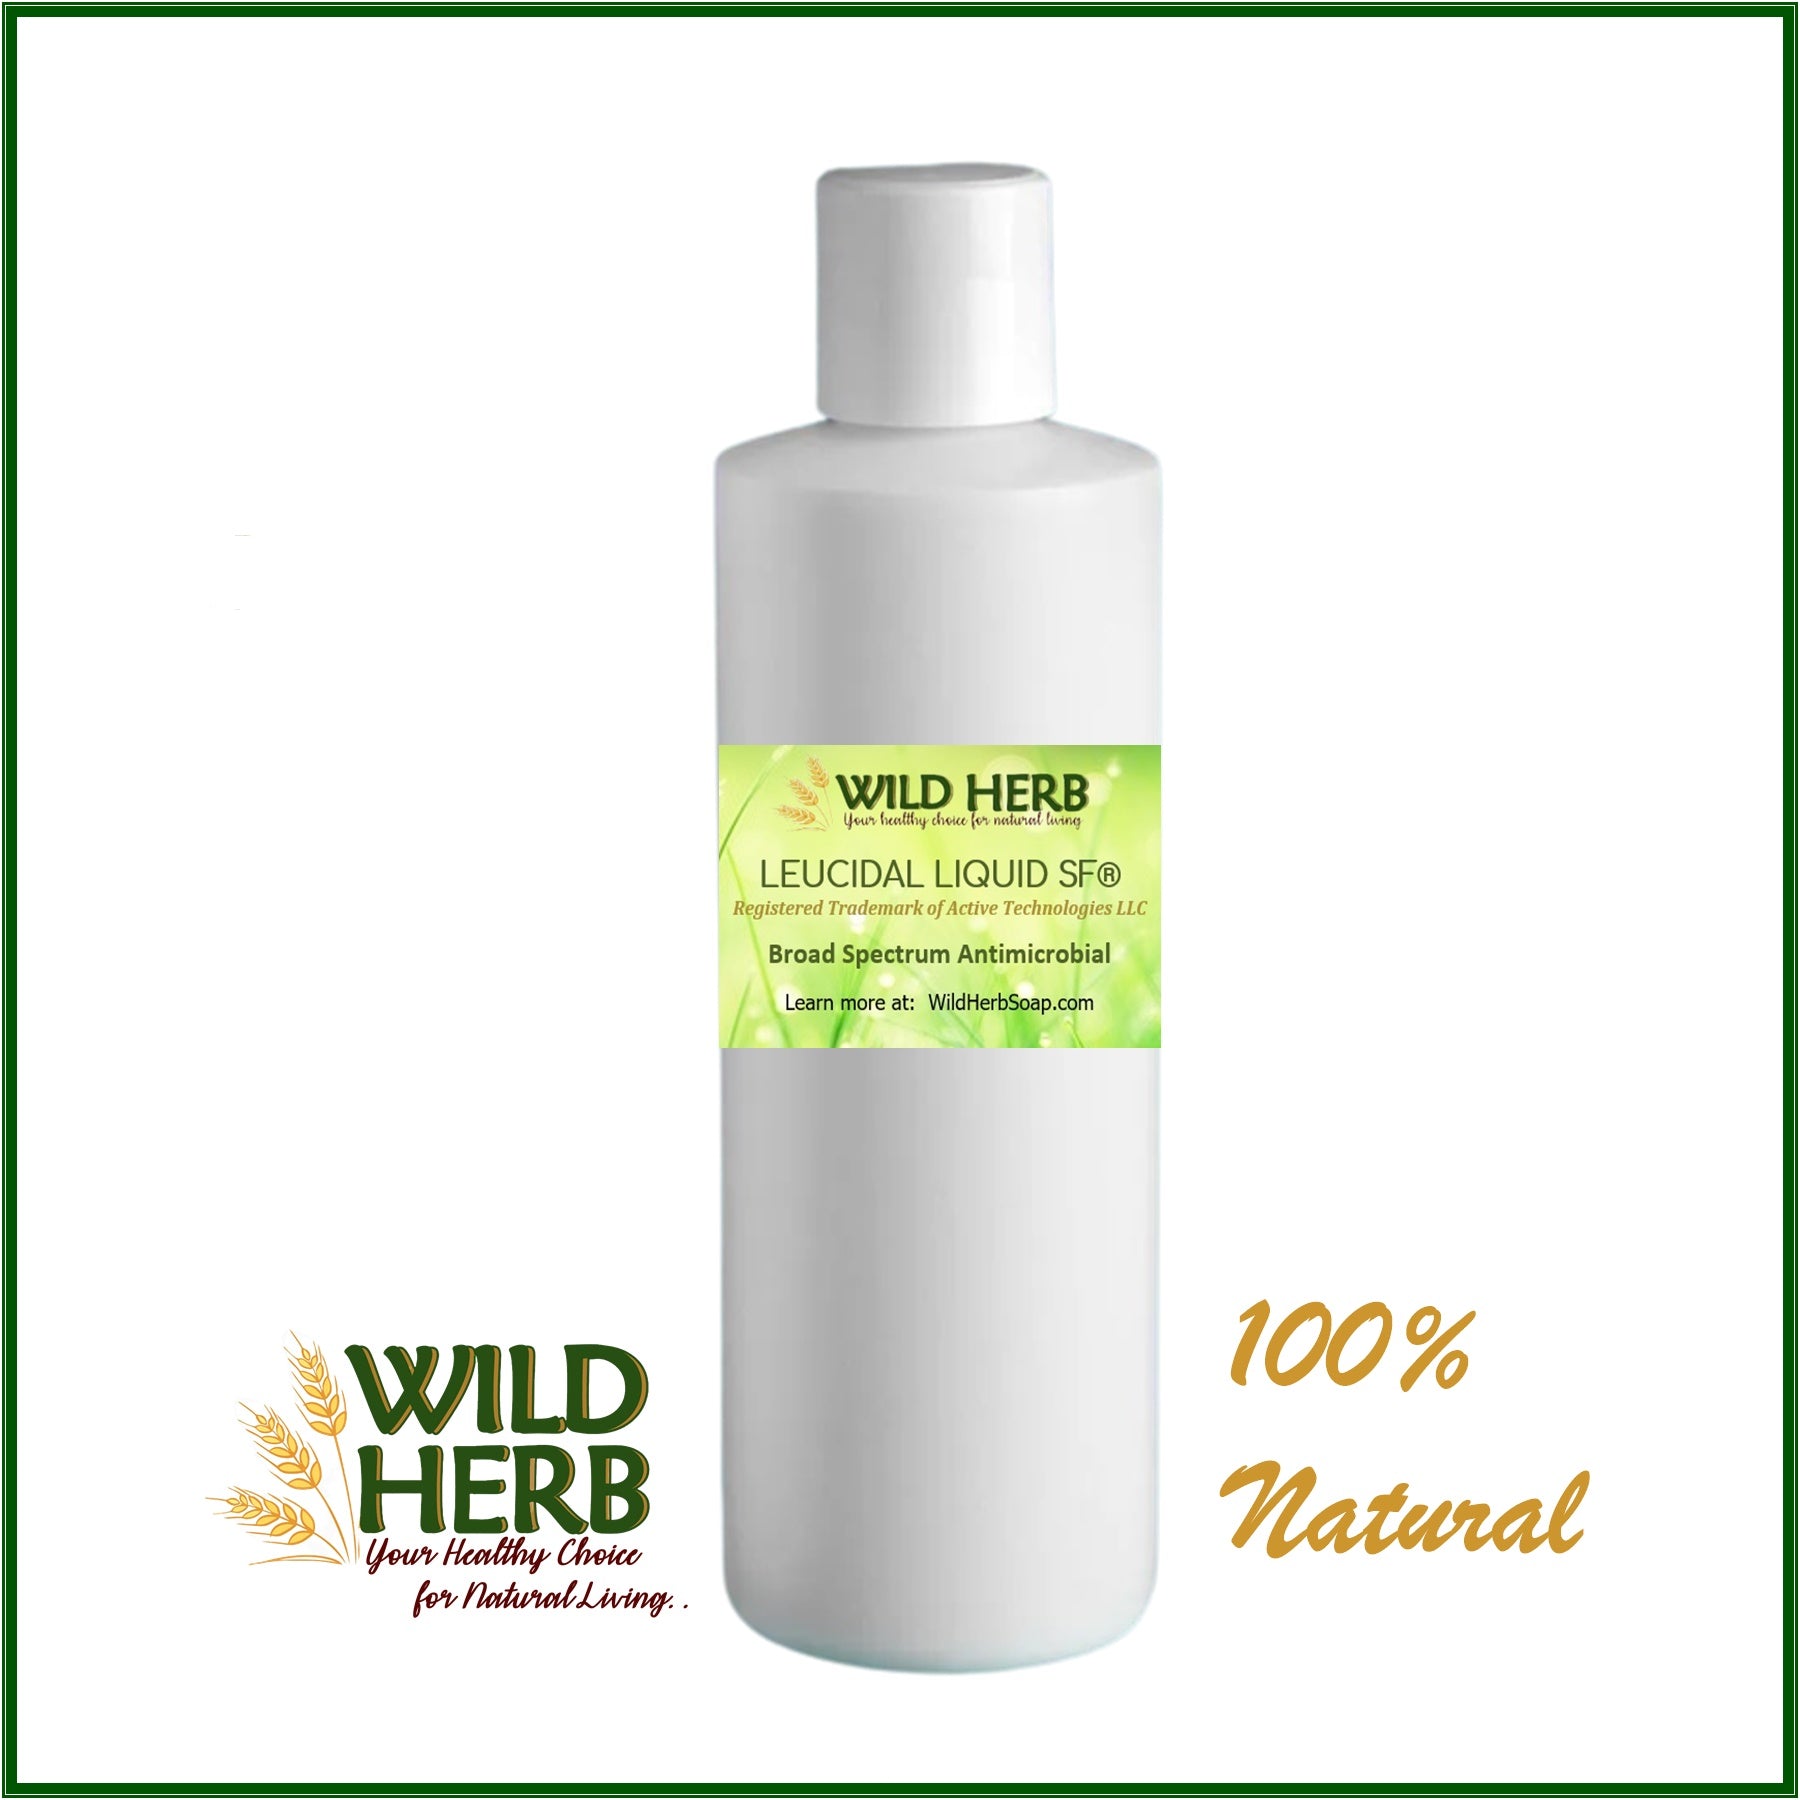 Wild Herb Emulsifying Wax is Vegetable Based